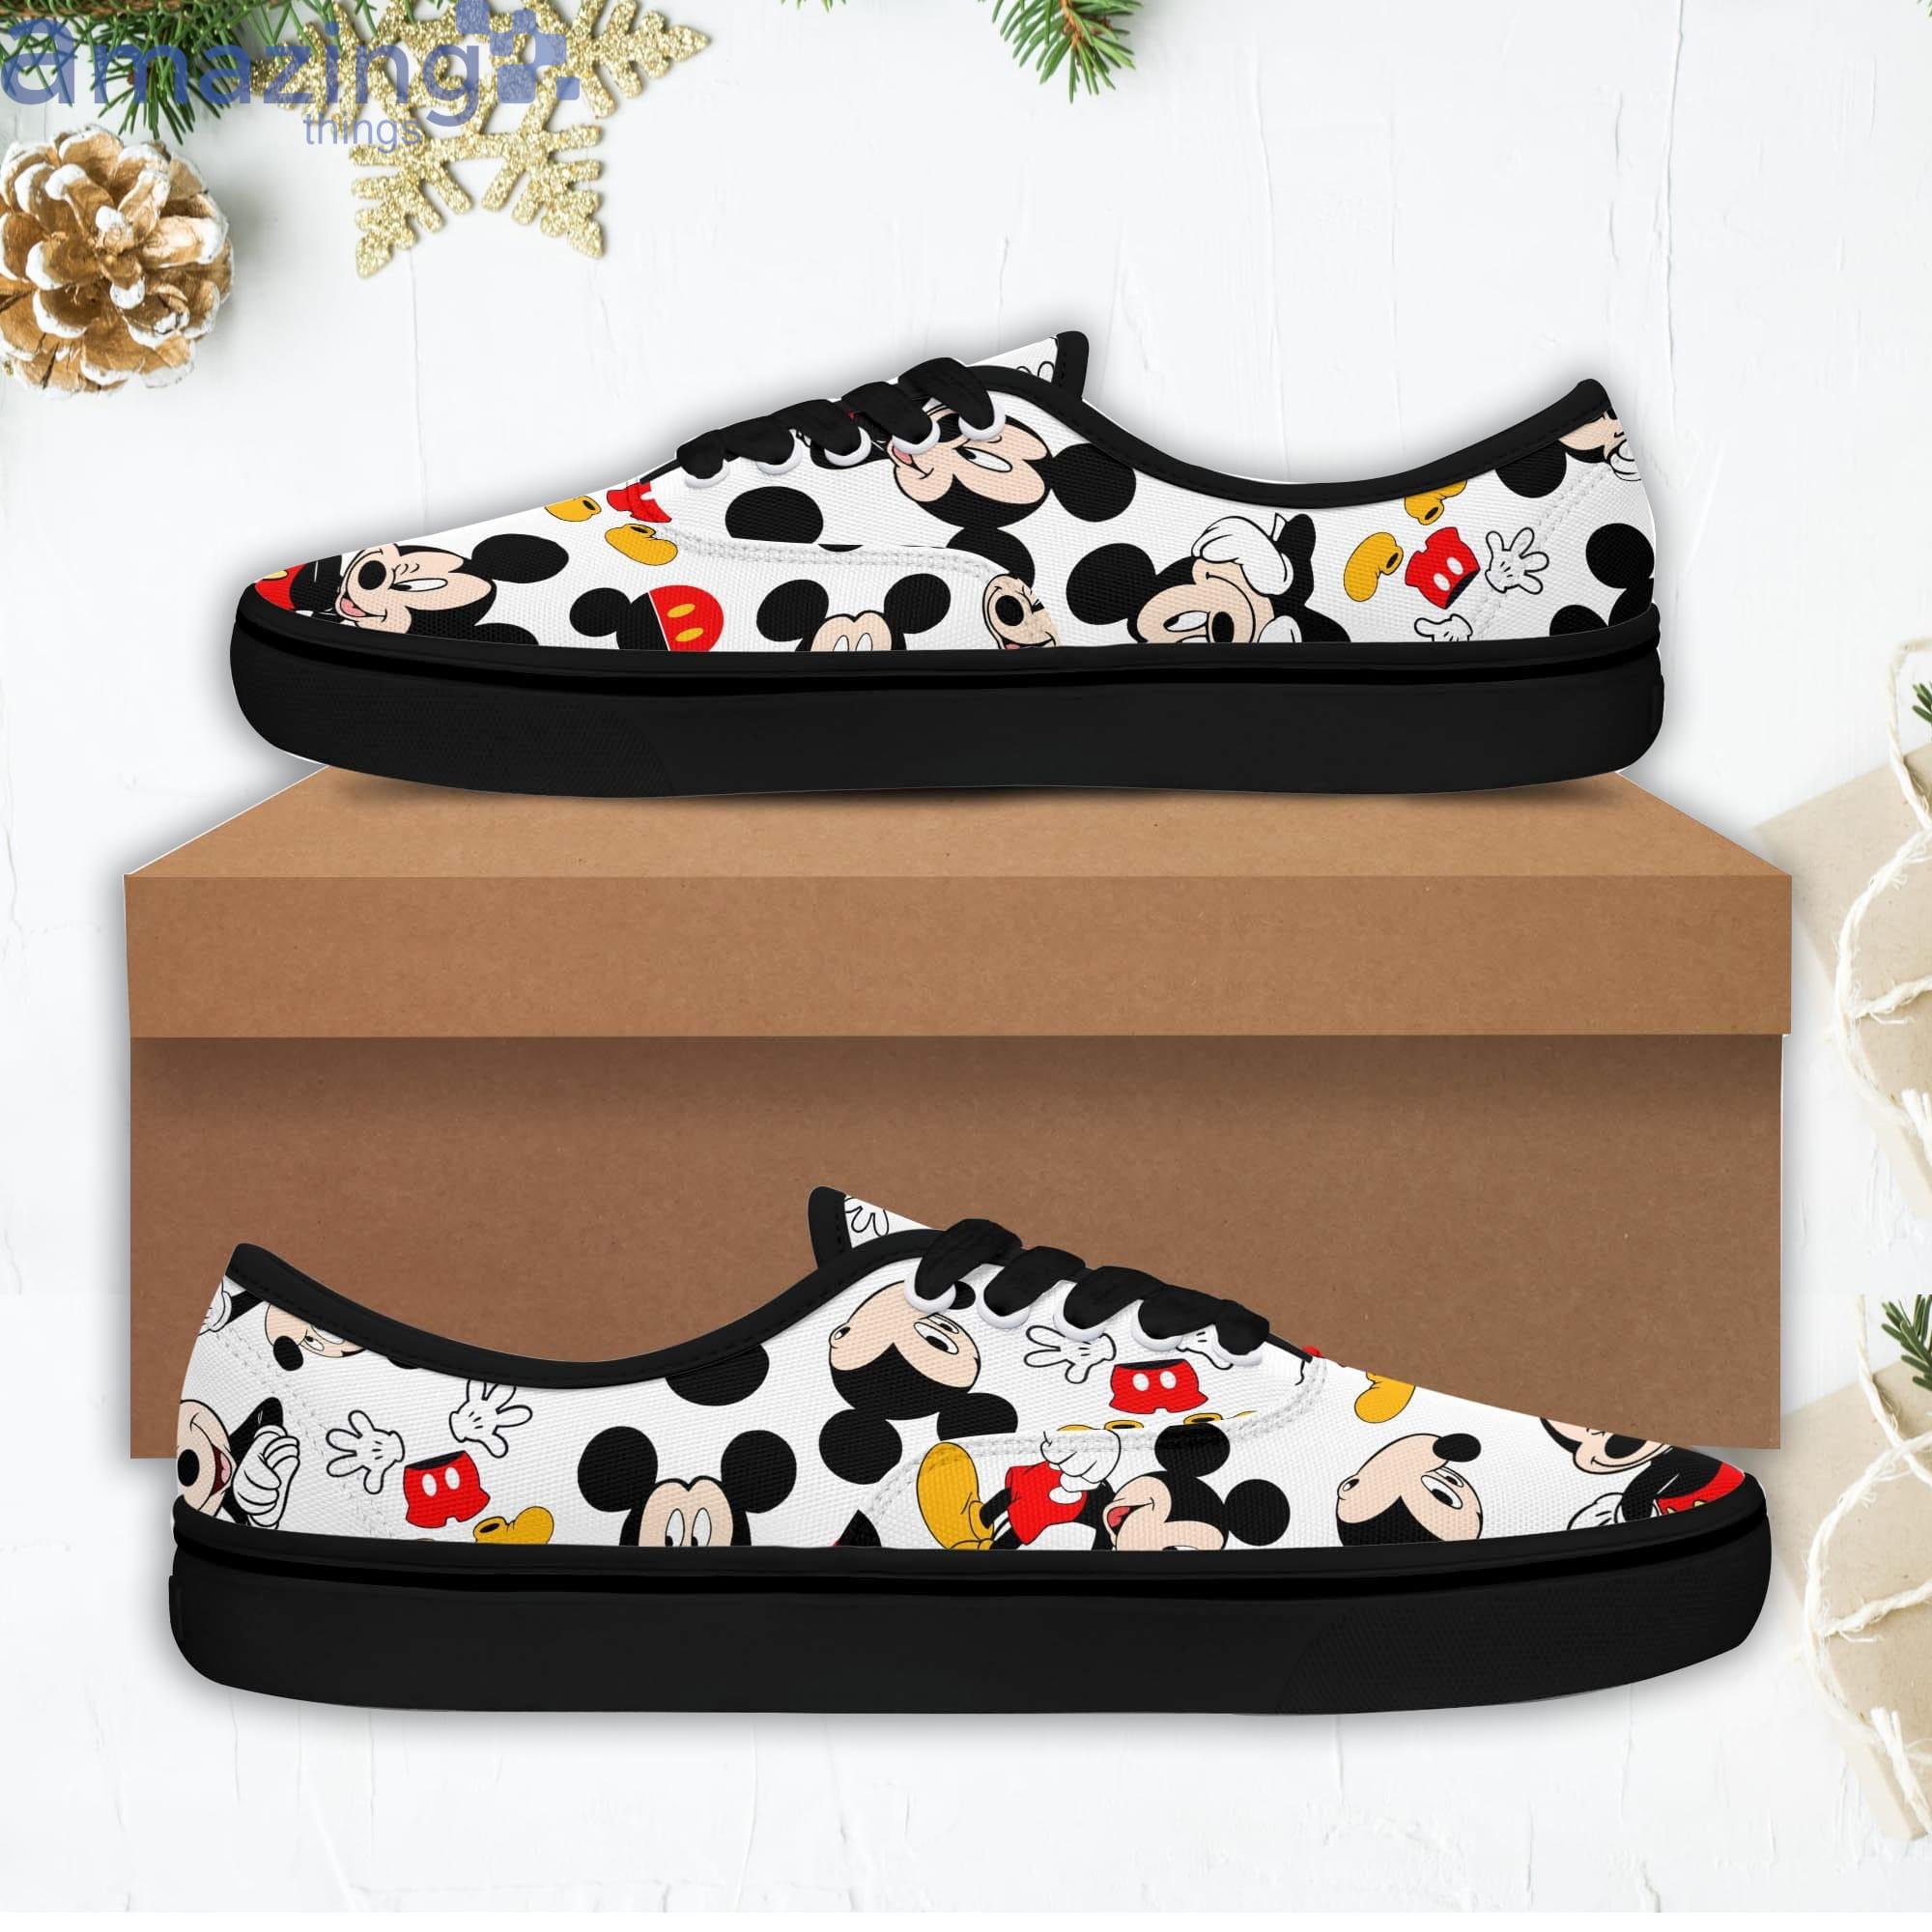 ik ben gelukkig zoet Articulatie Mickey Mouse Reds Disney Cartoon Low Top Slip On Lace Up Canvas Vans Shoes